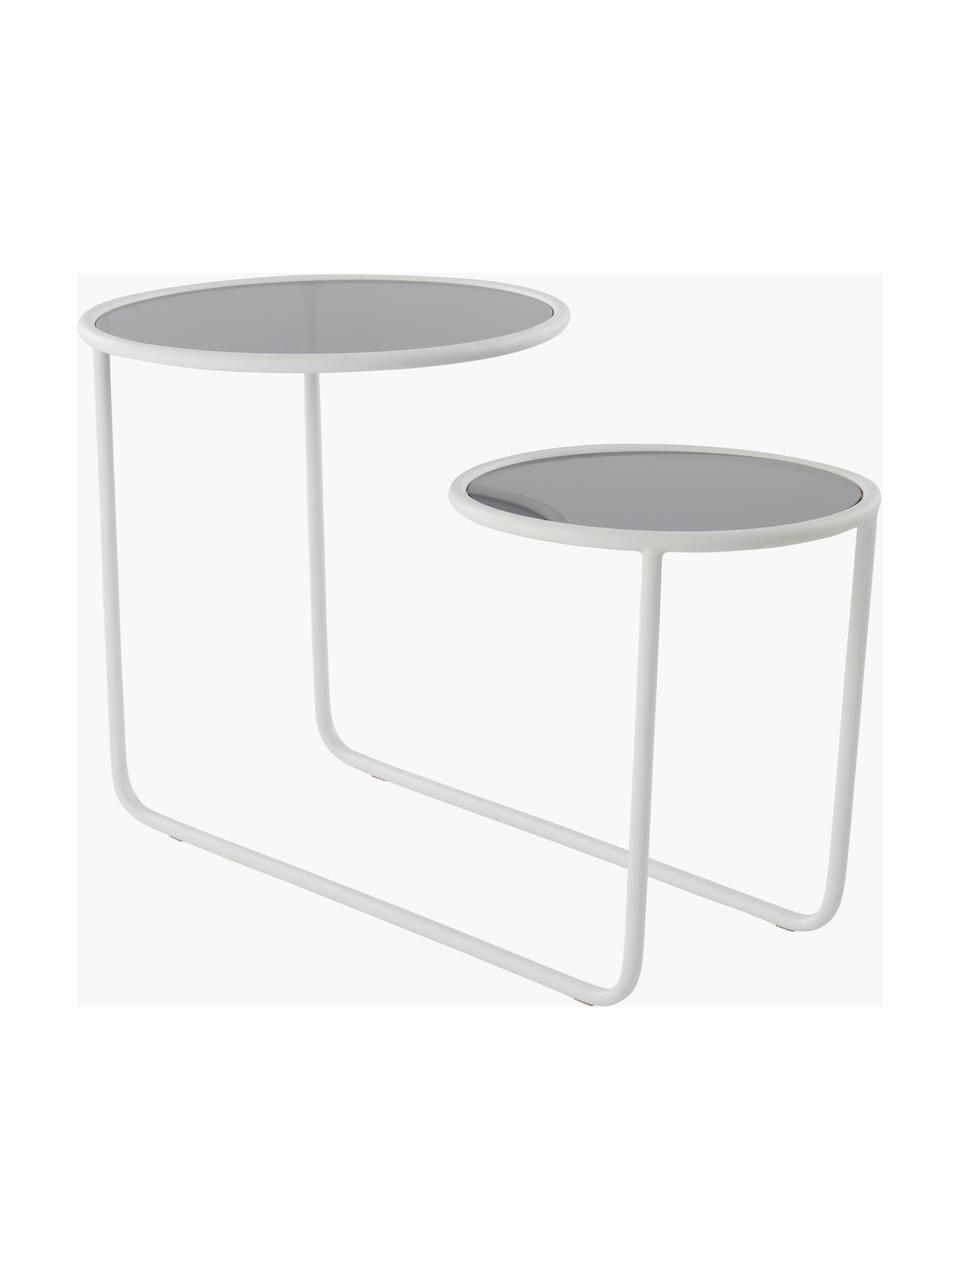 Beistelltisch Kallo mit zwei Tischplatten, Gestell: Eisen, pulverbeschichtet, Weiß, Grau, transparent, B 81 x H 50 cm